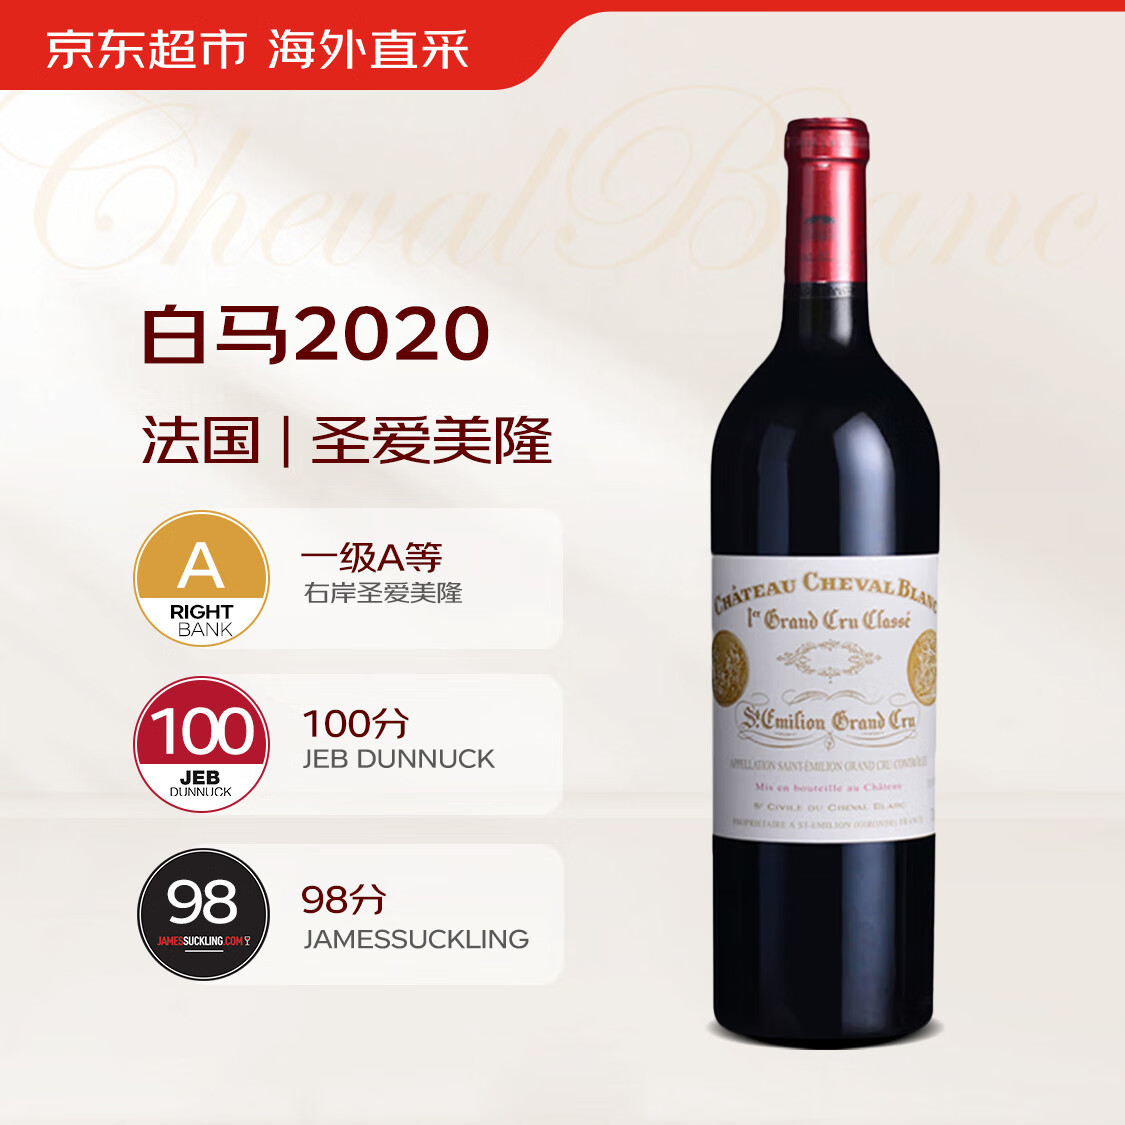 白马庄园（Chateau Cheval Blanc）干红葡萄酒2020年750ml圣爱美隆一级名庄JD100分 【京东直采】